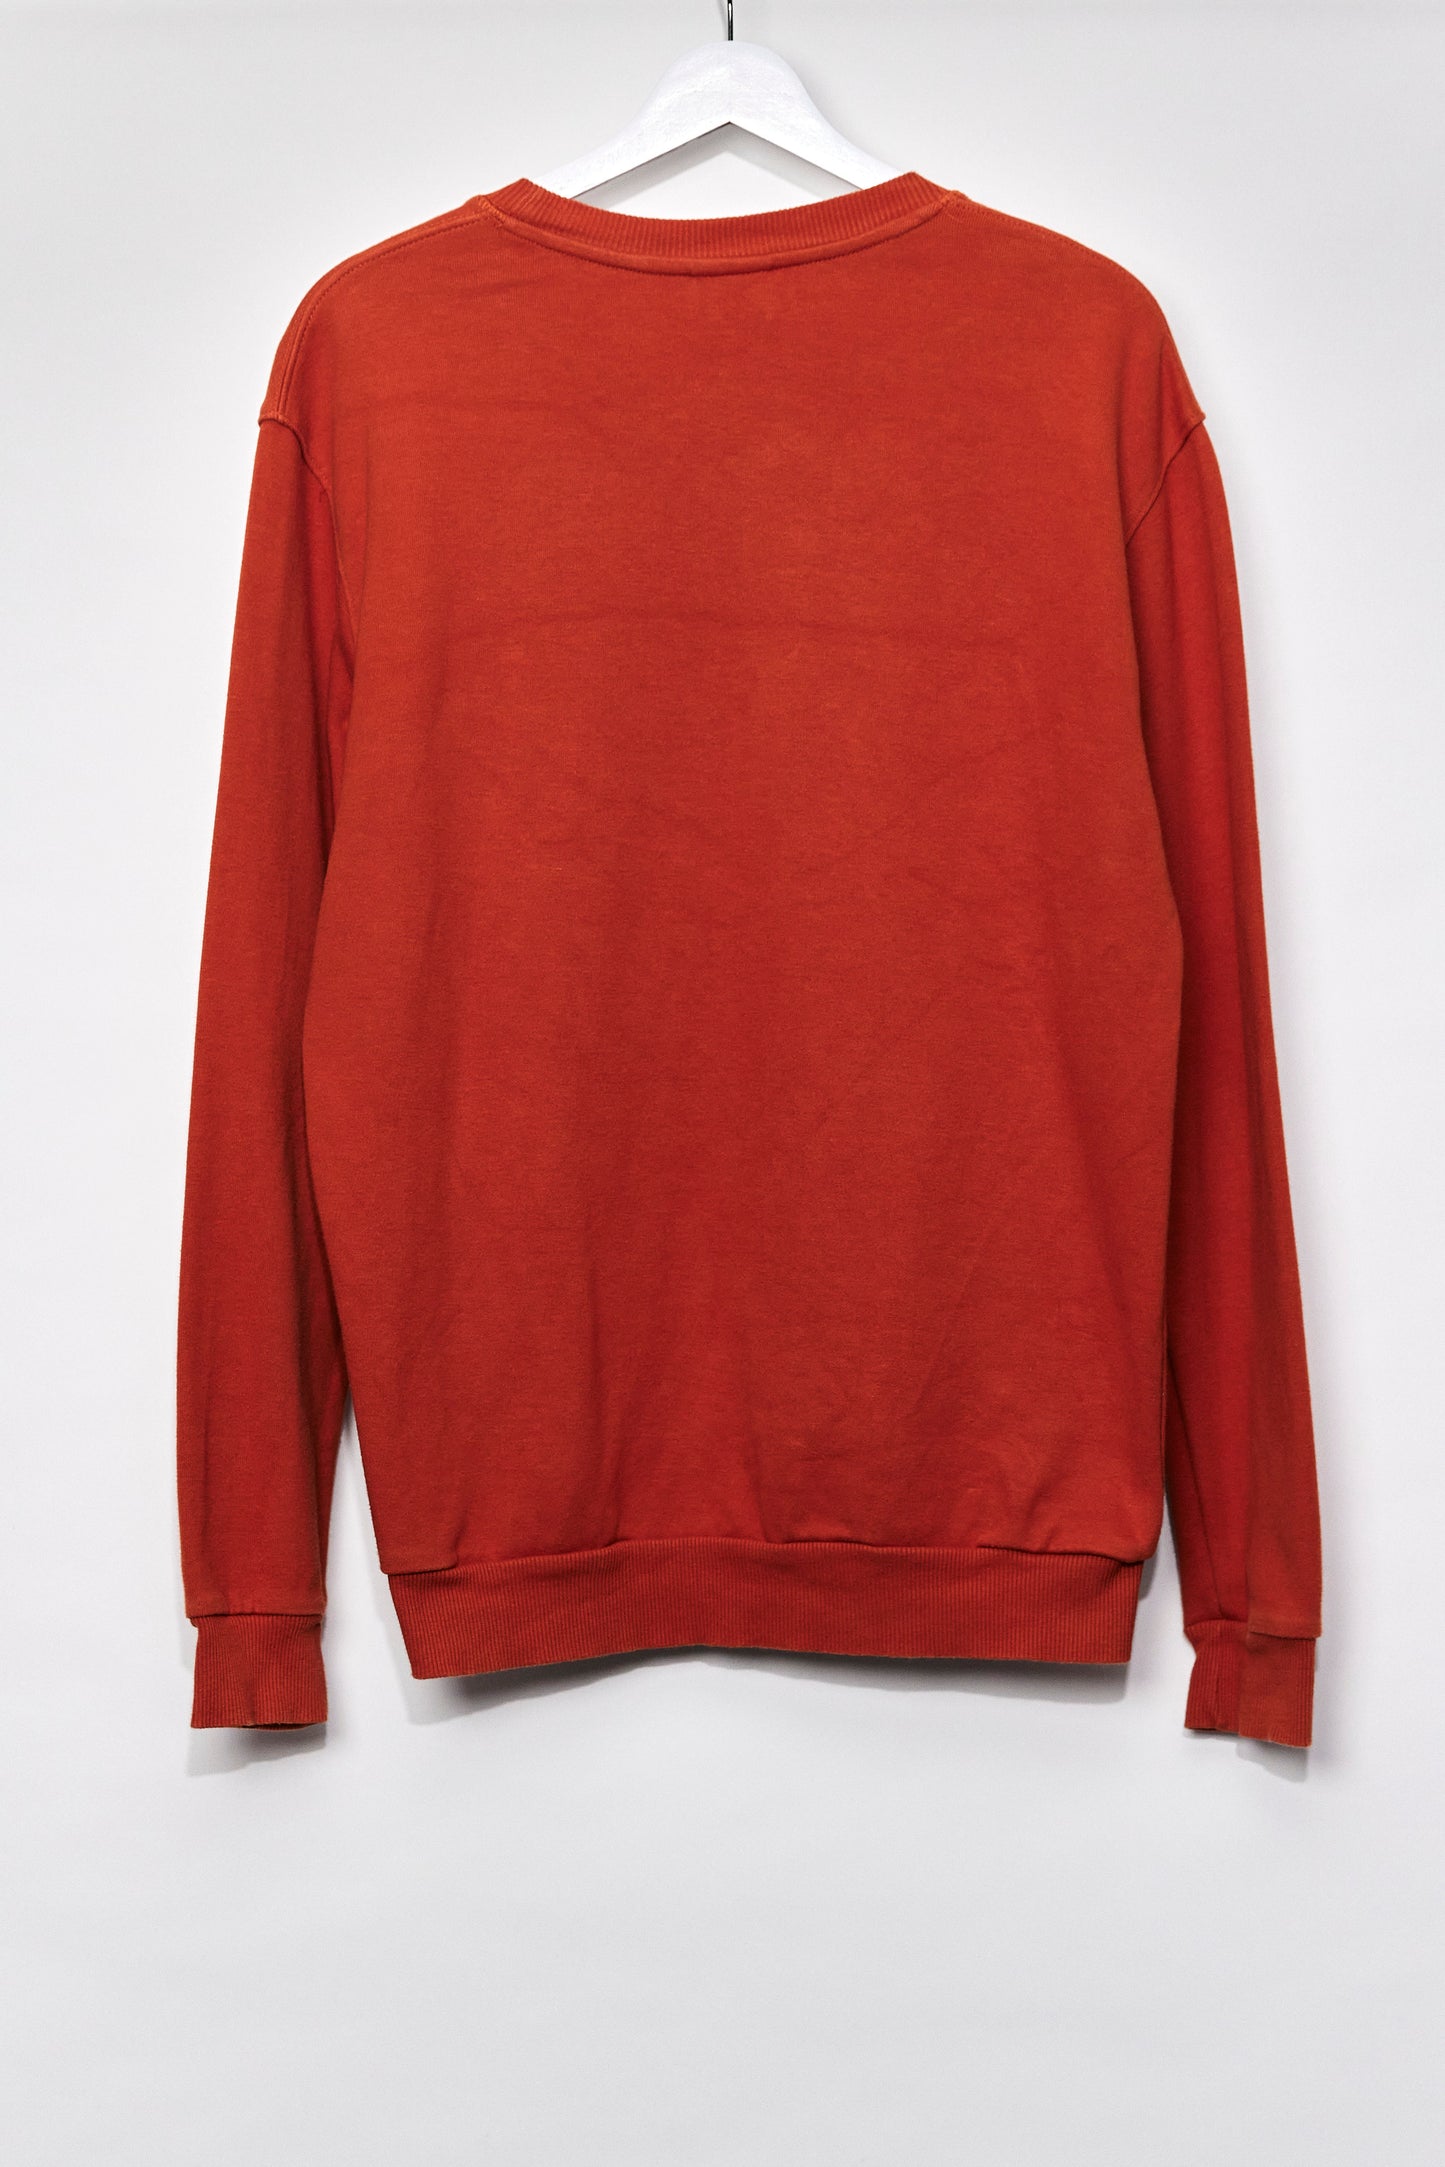 Mens Zara Orange Sweatshirt size Medium